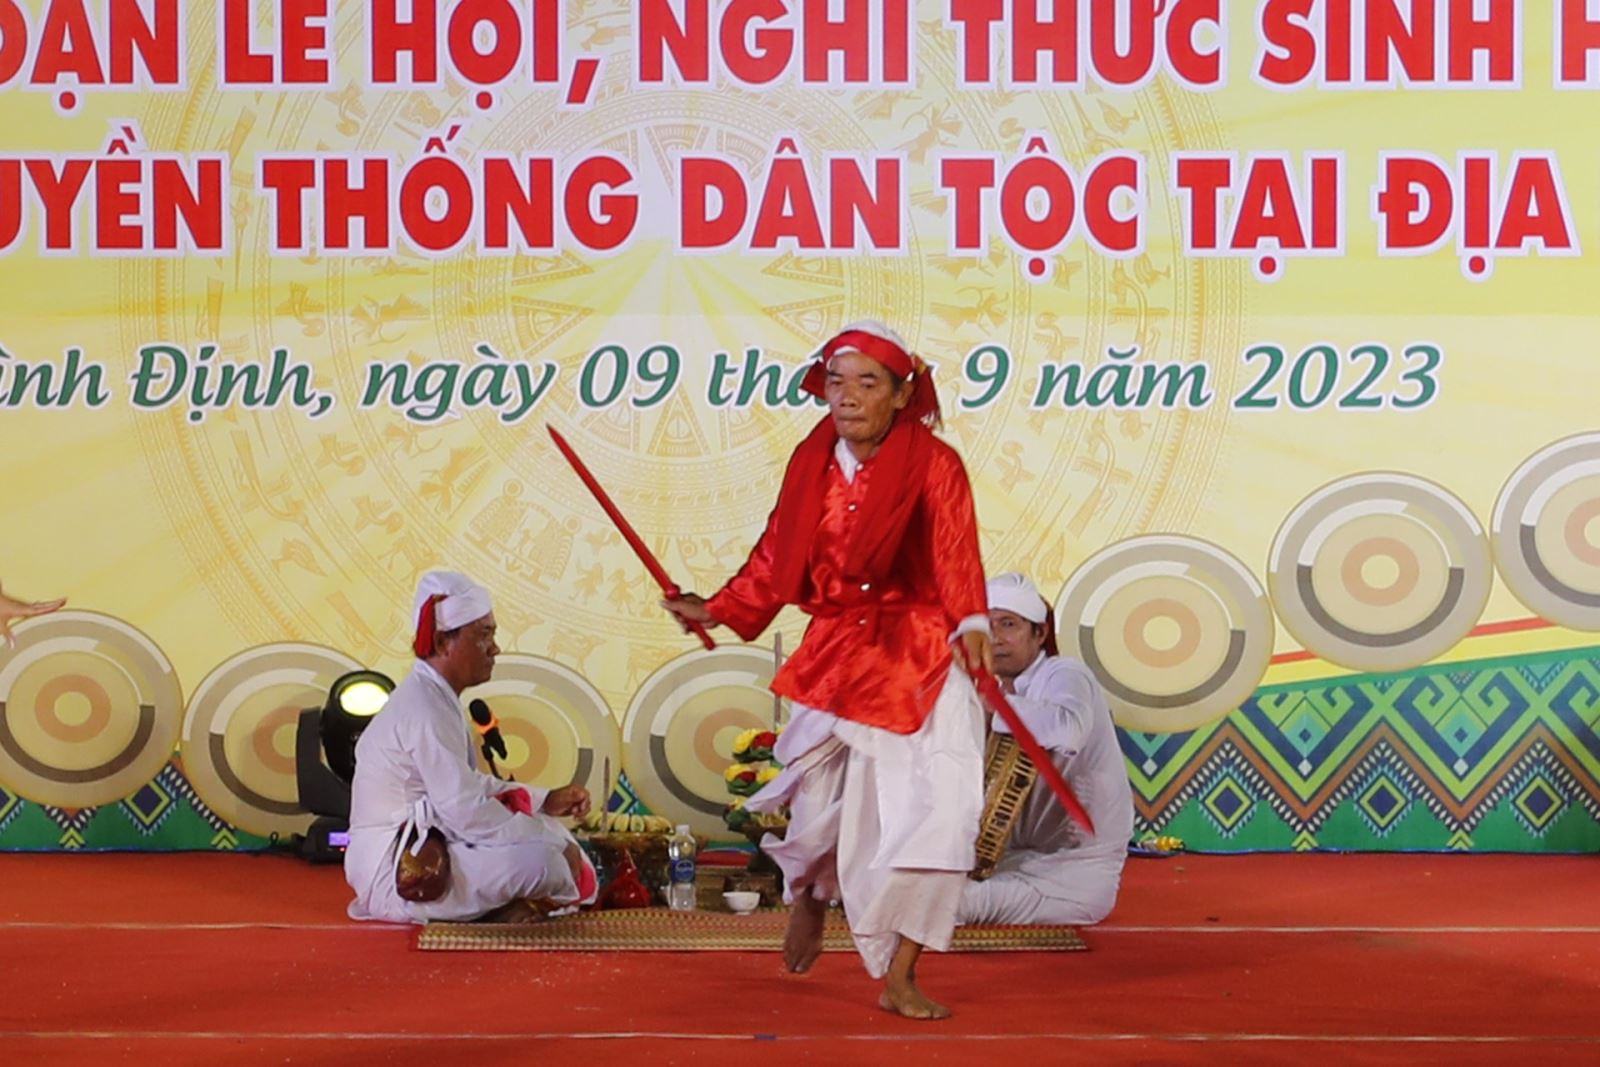 Đặc sắc lễ cầu mưa đầu năm của người Chăm Bình Thuận